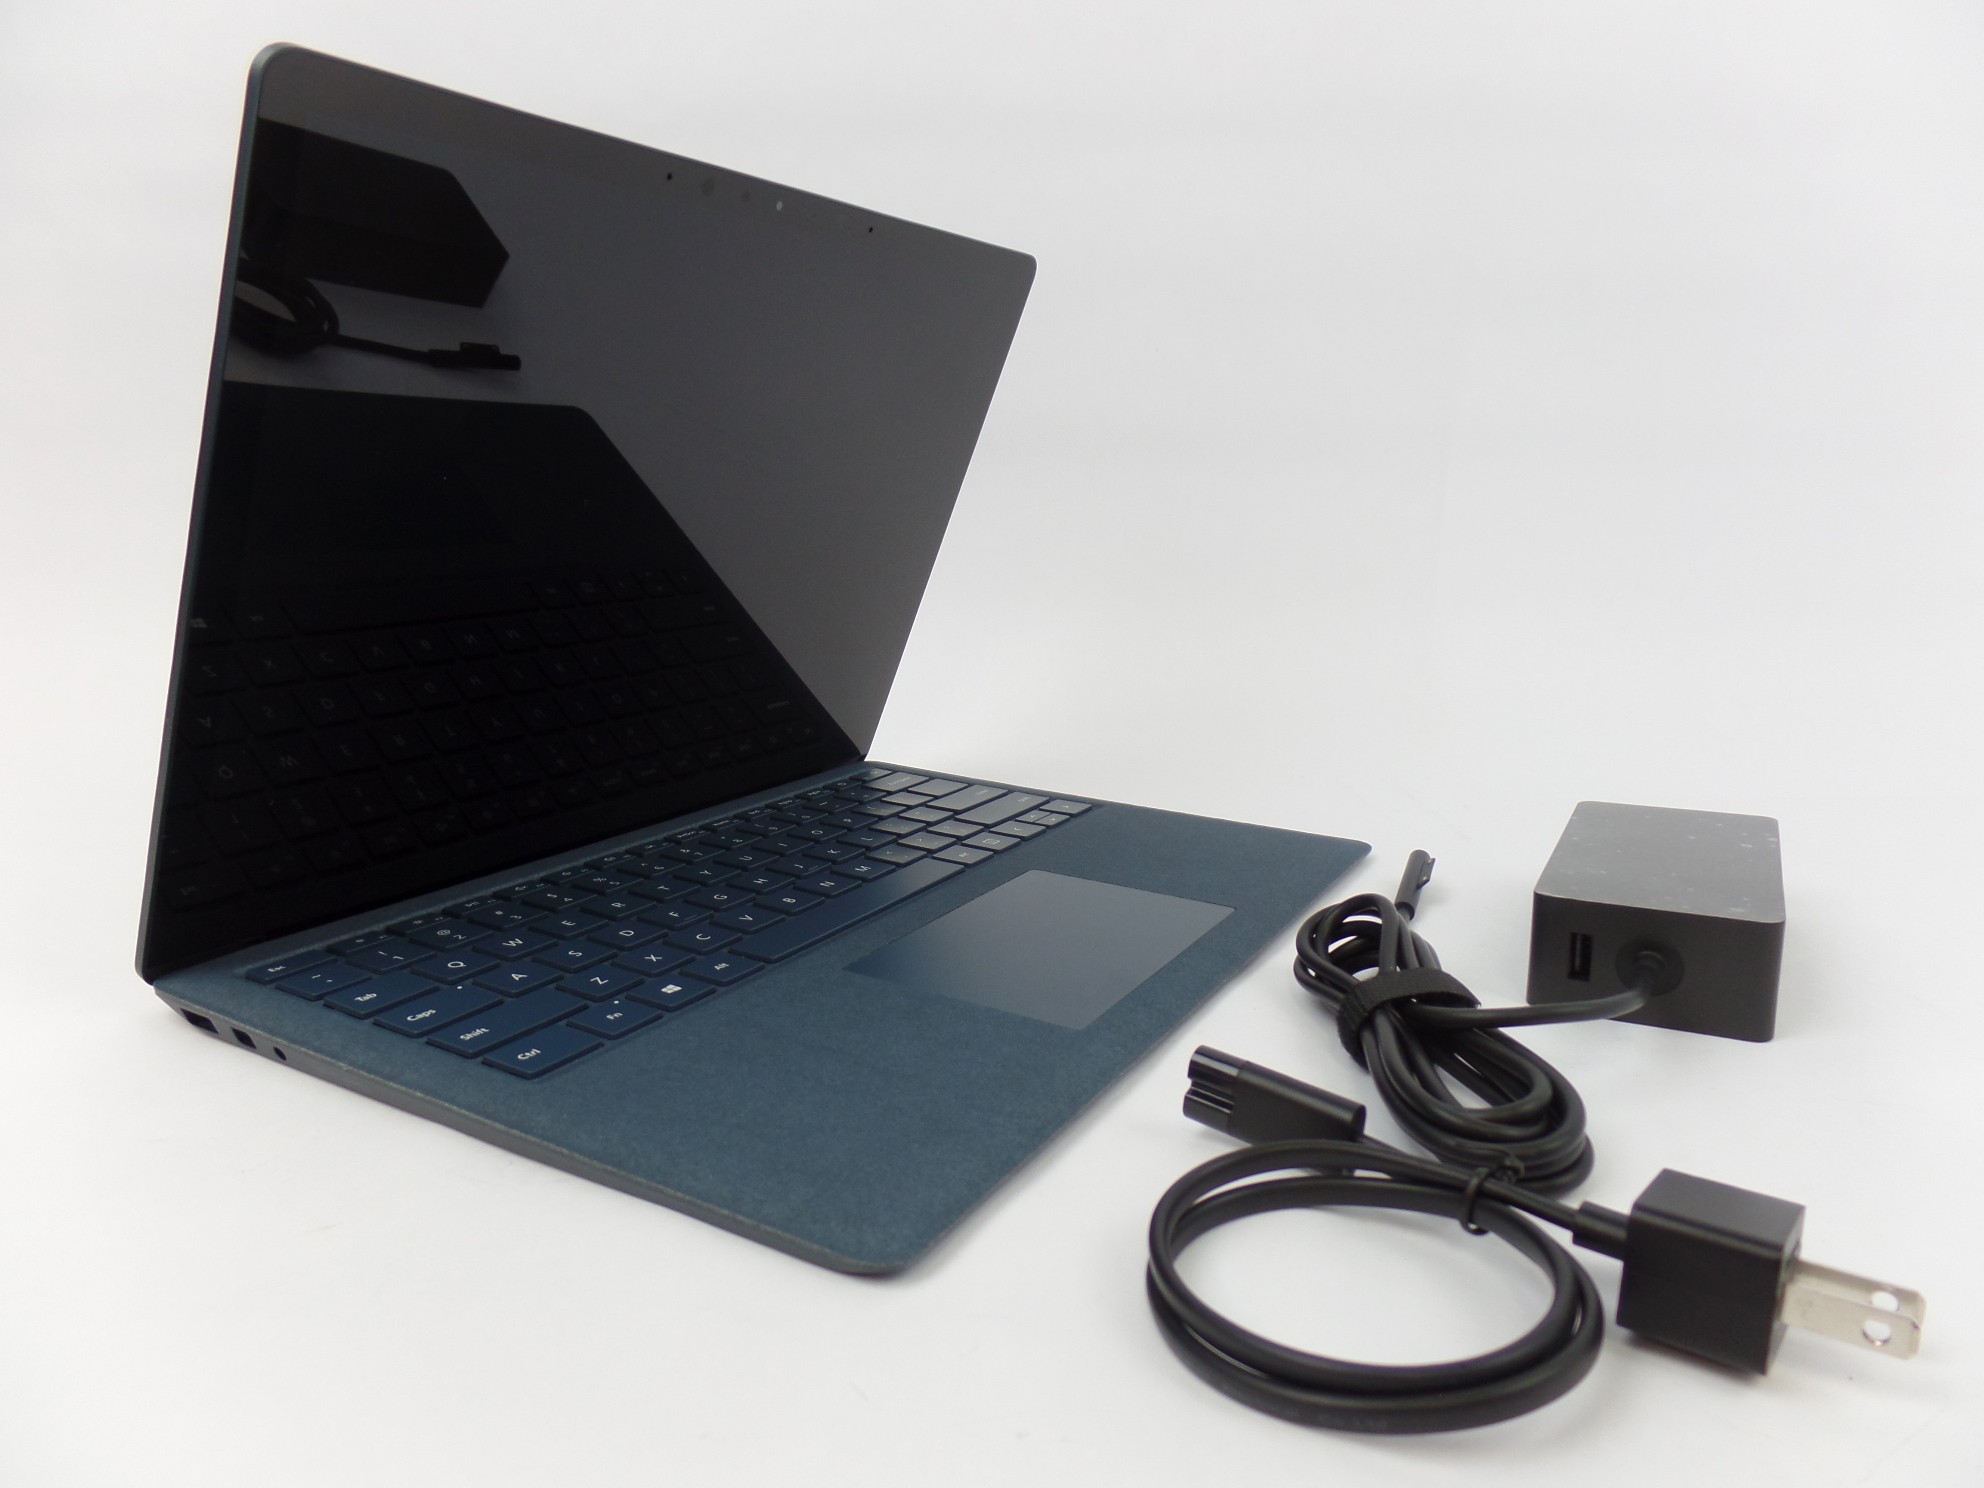 Read: WiFi issue. Microsoft Surface Laptop 2 1769 13.5" i7-8650U 1.9GH 8GB 256GB